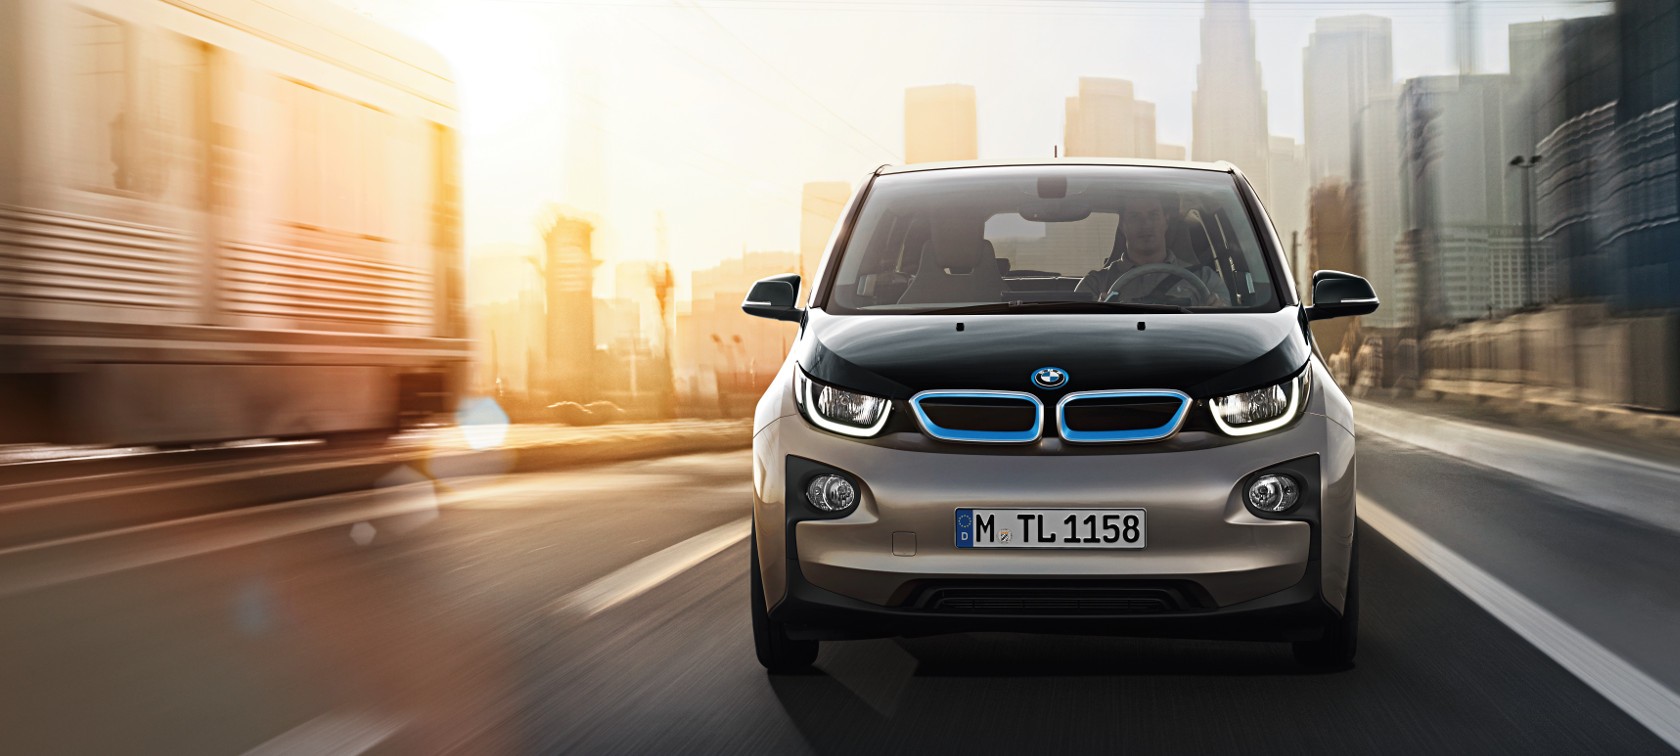 BMW yatırımlarını yeni otonom teknolojisi projesine yönlendiriyor